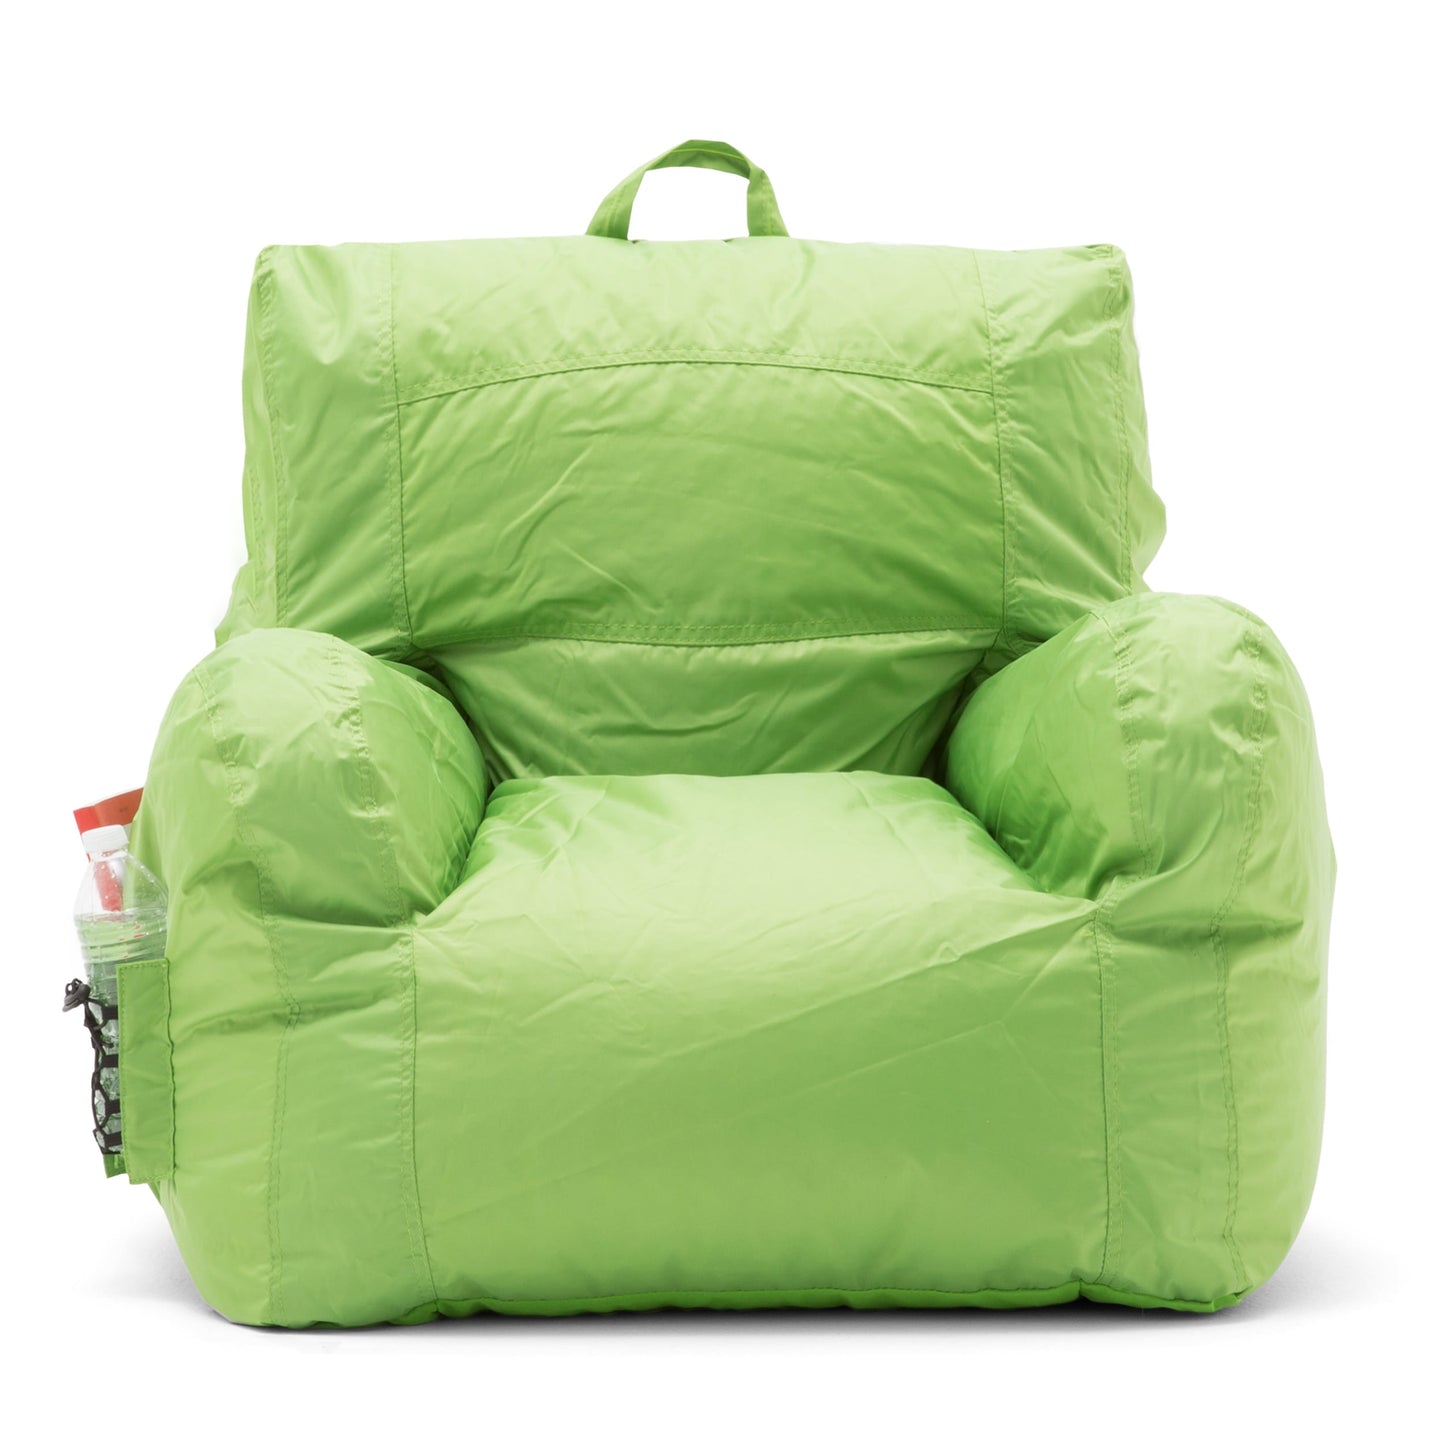 Dorm Bean Bag Chair